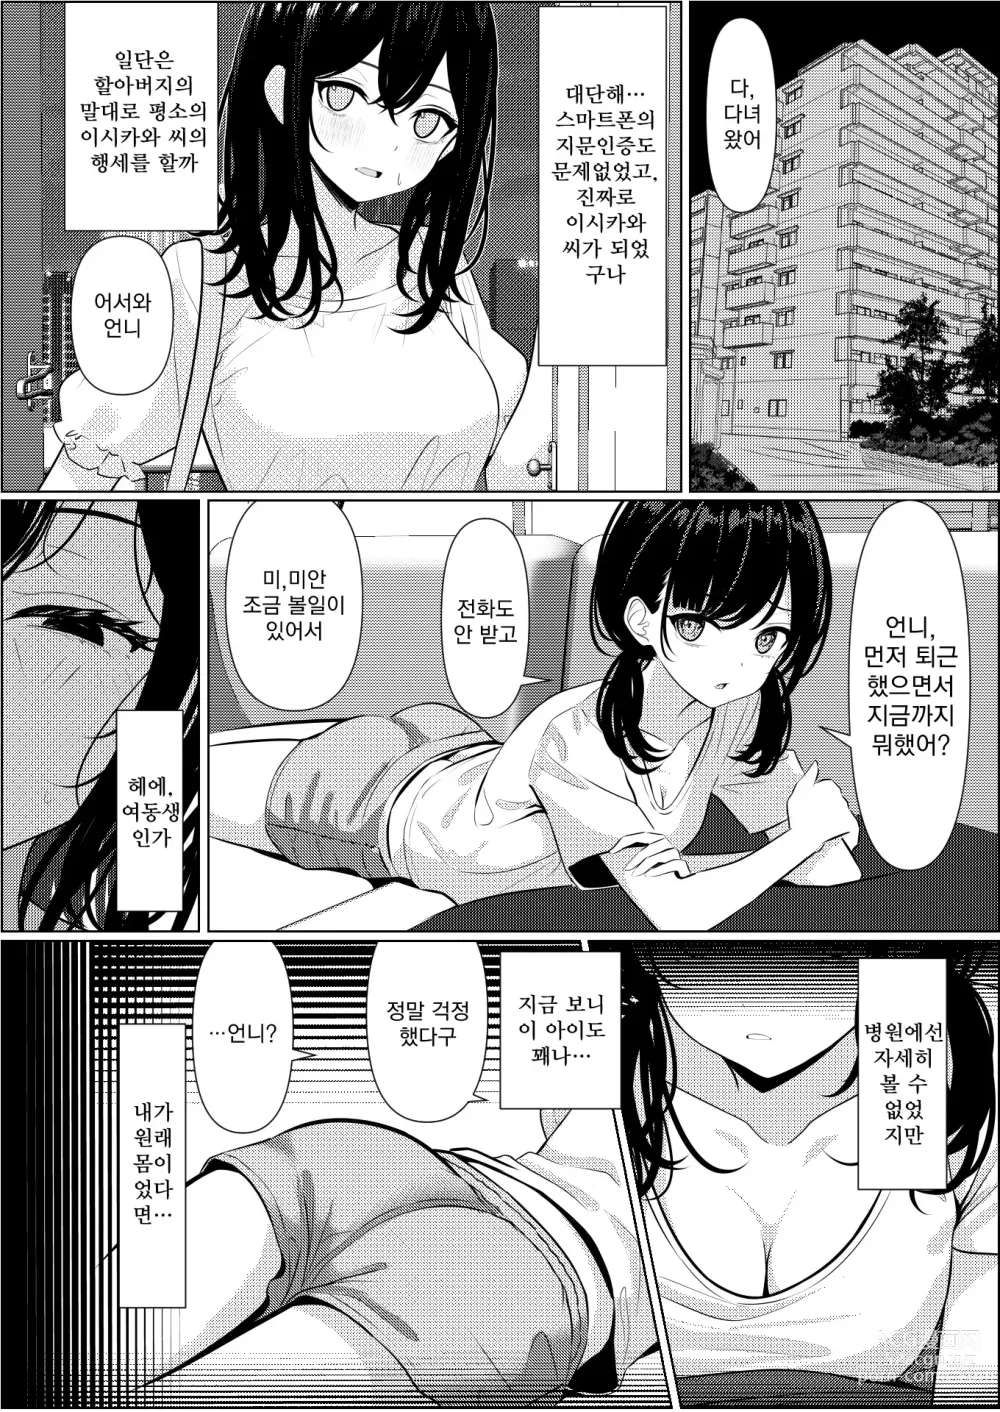 Page 18 of doujinshi 외톨이로 죽은 내가 미소녀 간호사가 된 이야기